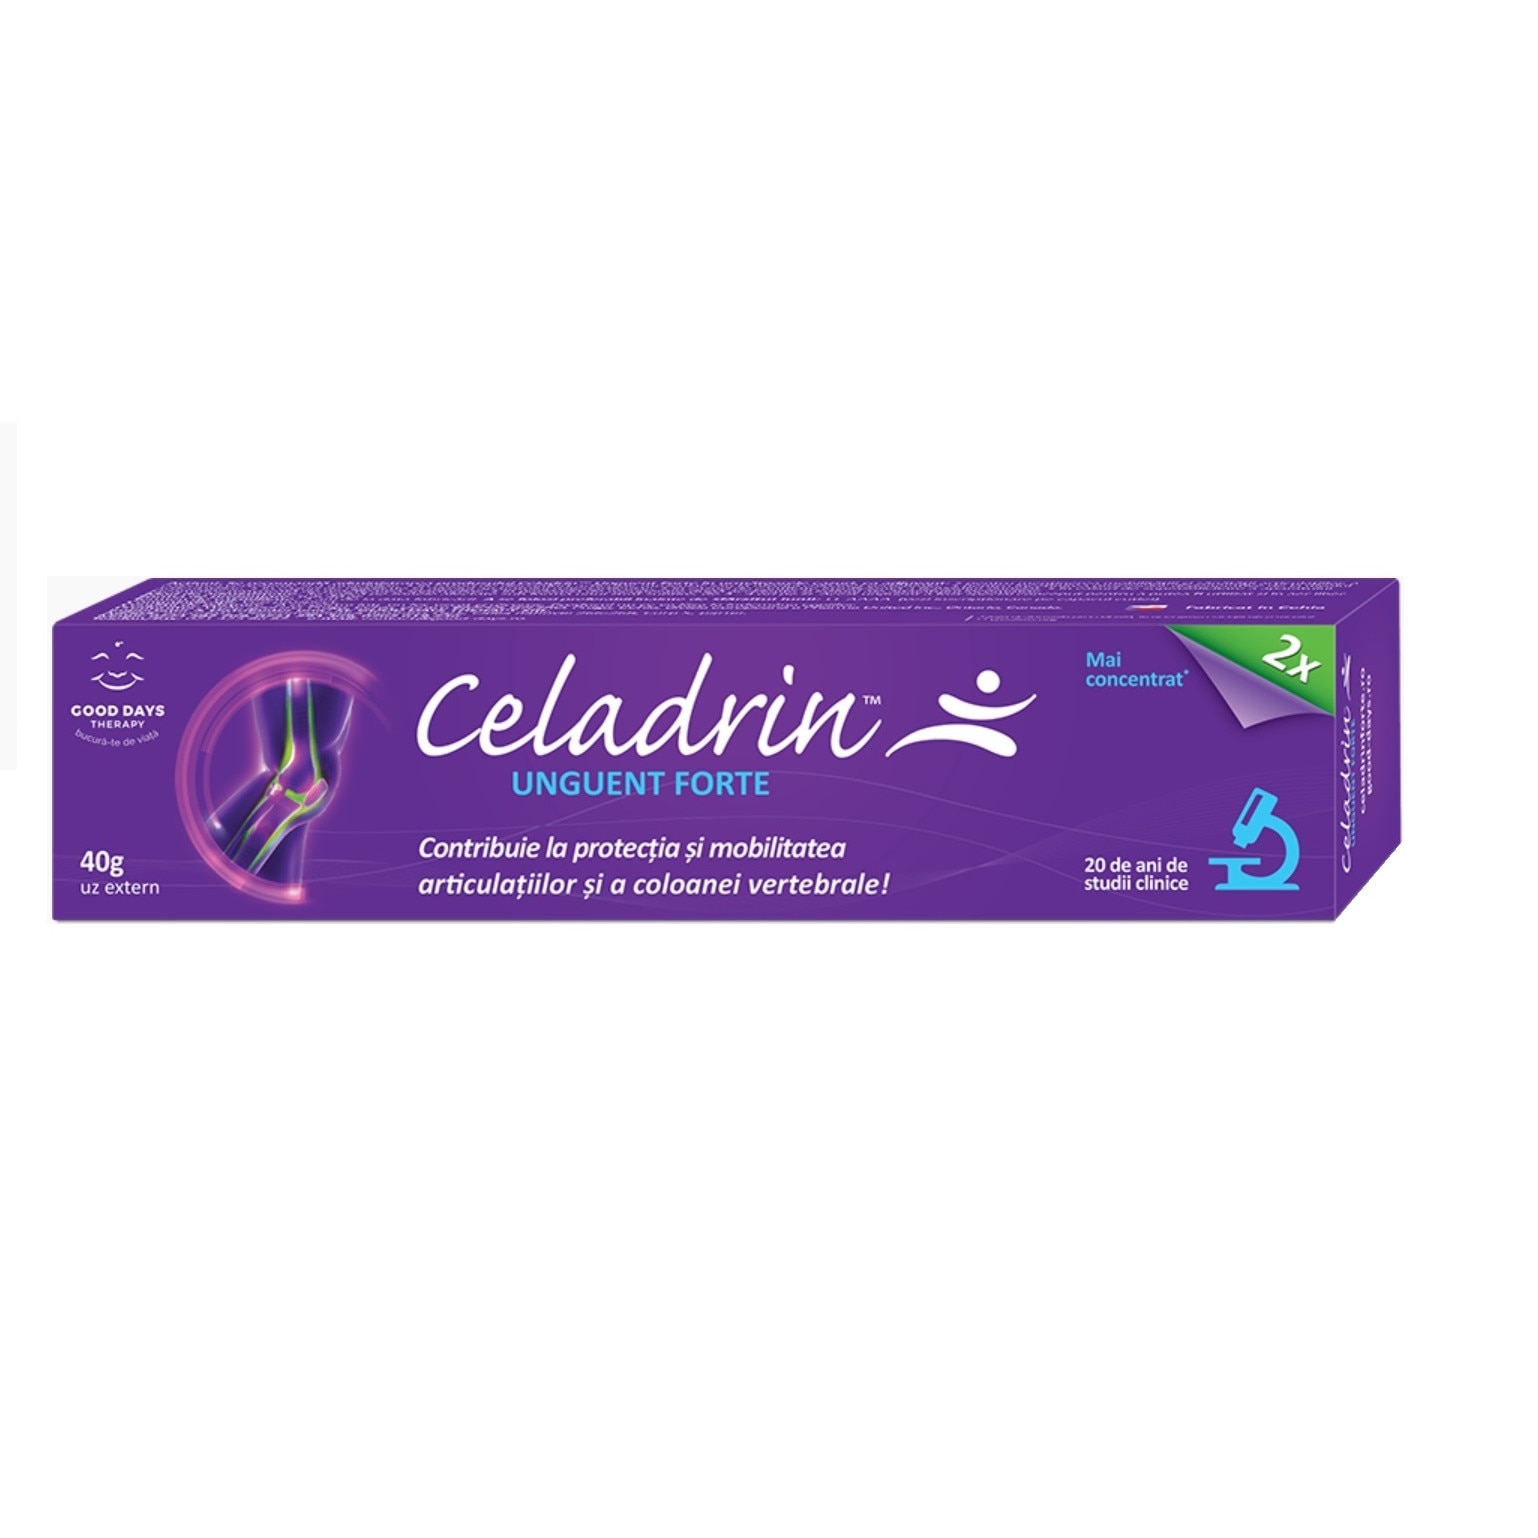 Oferta Celadrin + Colafast | Farmacia Ardealul